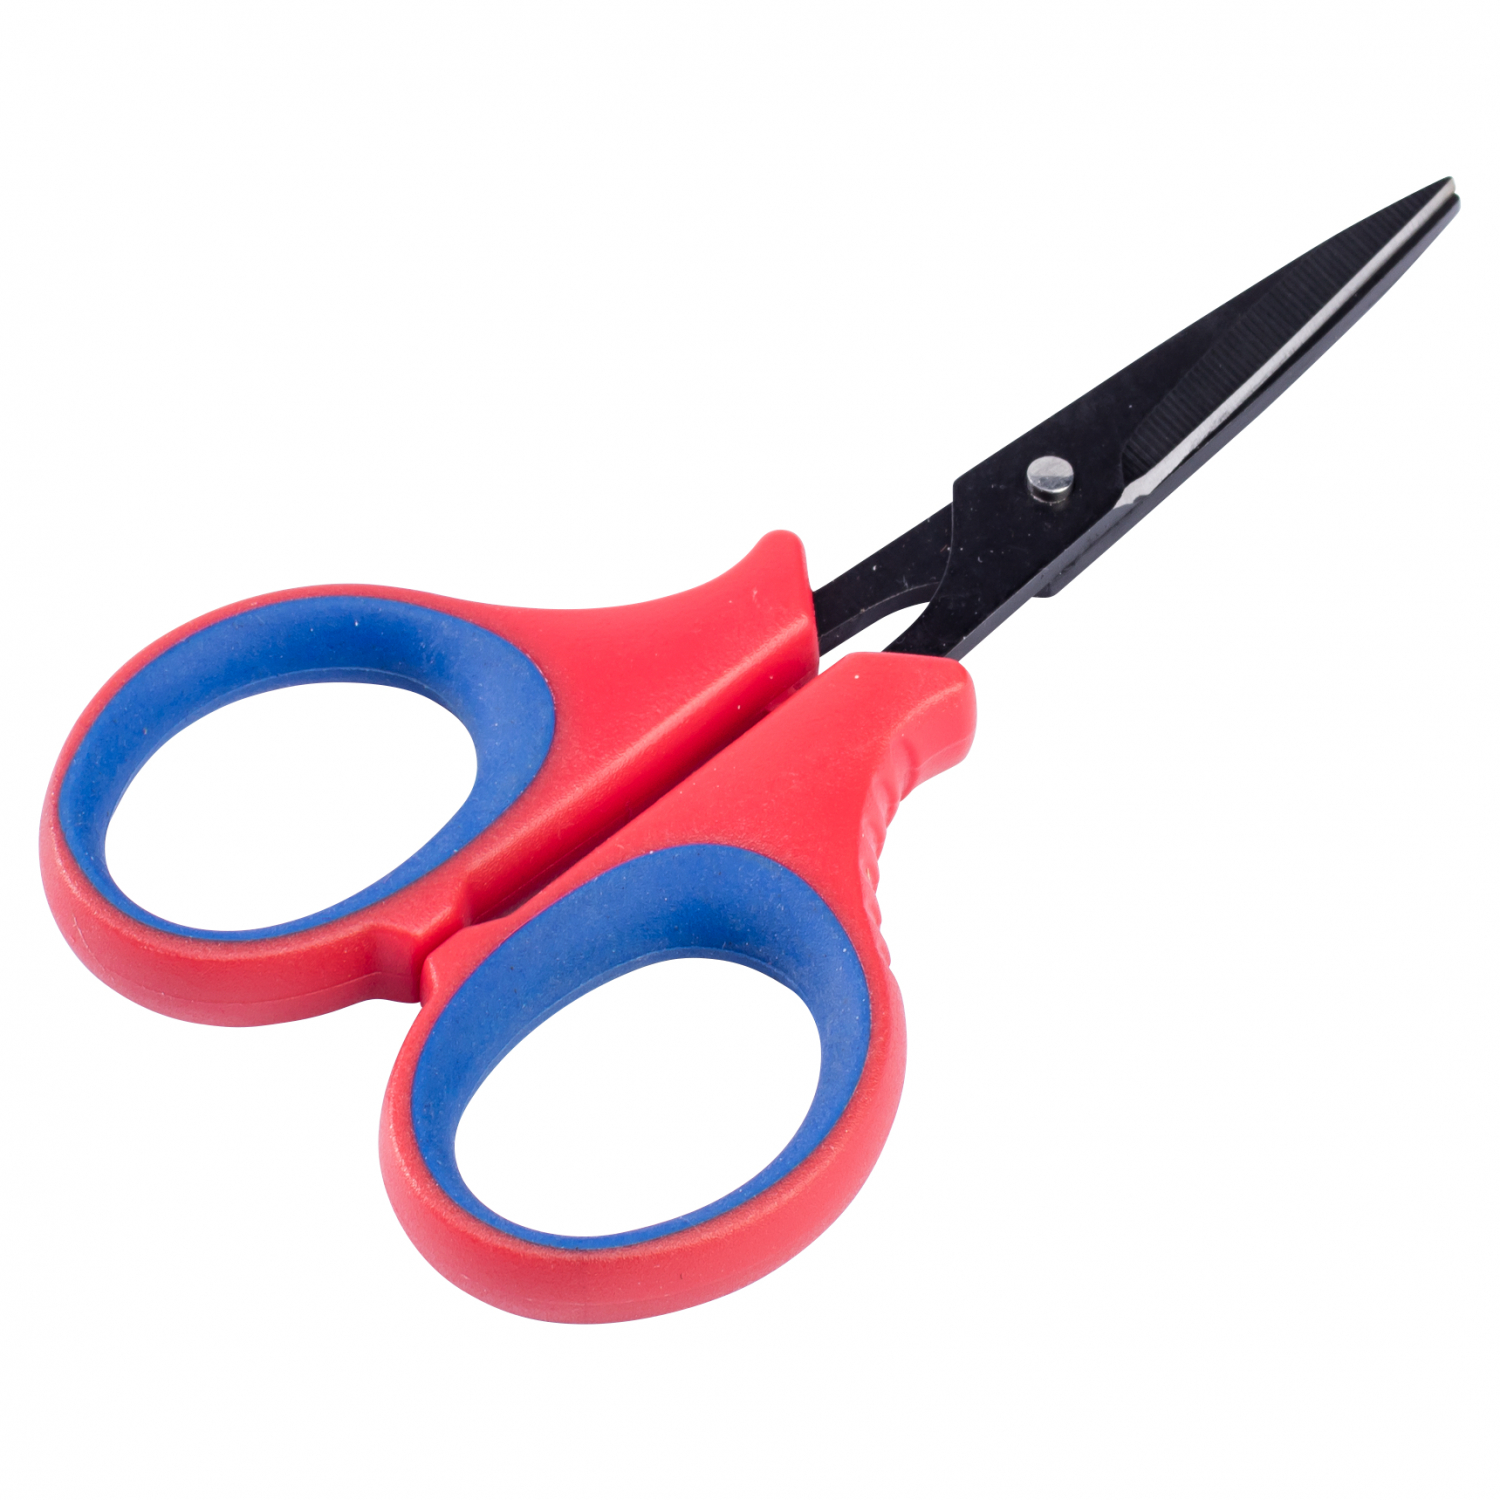 Perca Original Angler Scissors 